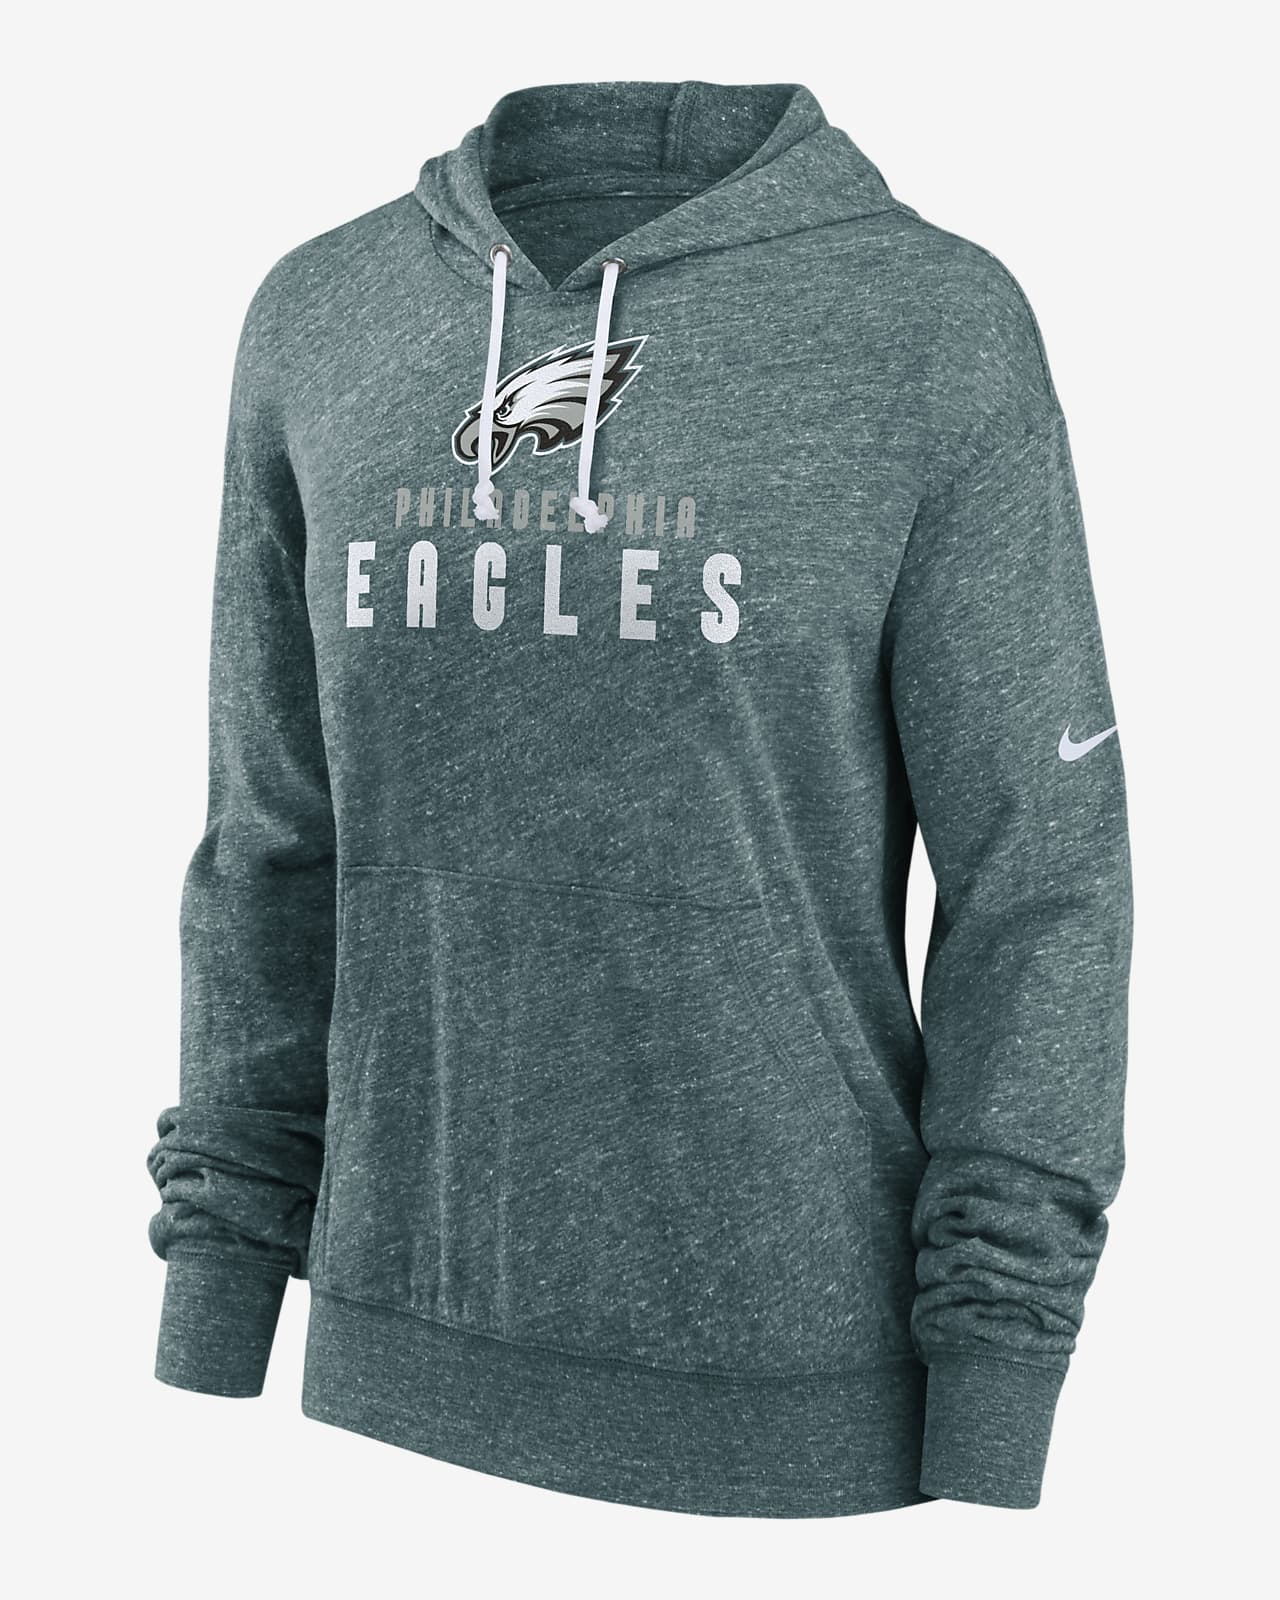 eagles throwback hoodie